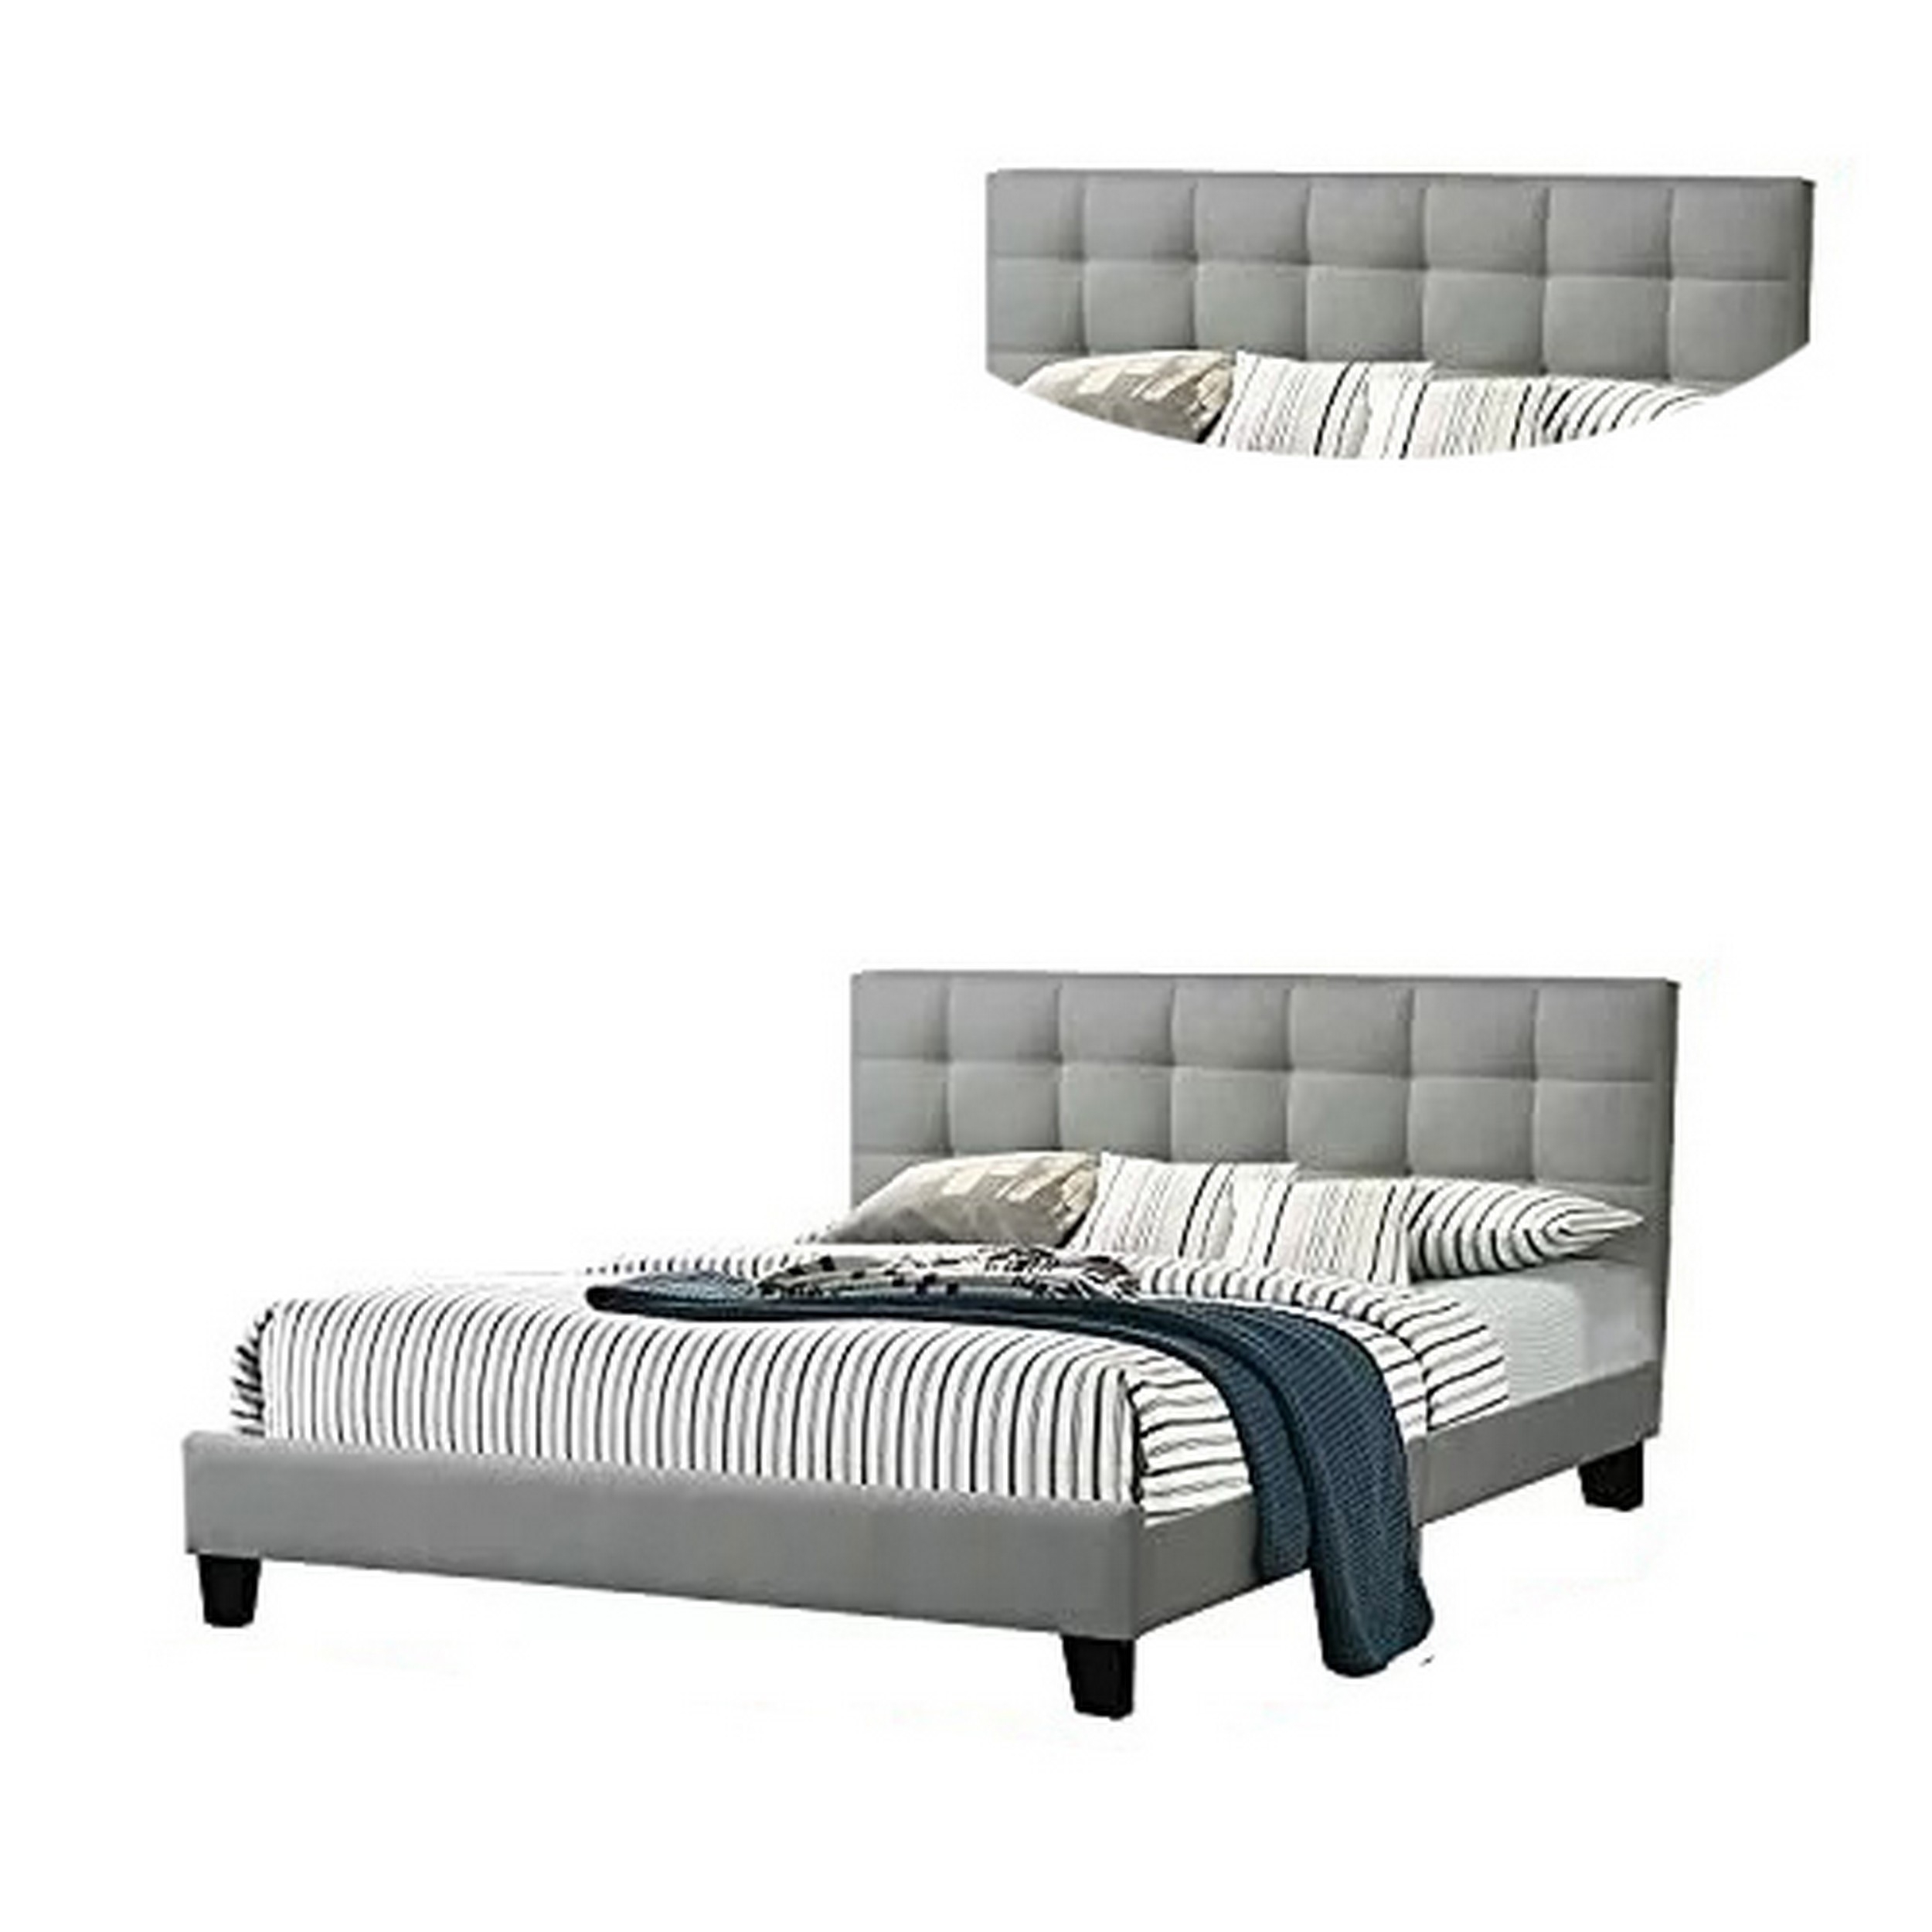 Dex Modern Platform Full Size Bed, Plush Tufted Upholstery, Light Gray- Saltoro Sherpi